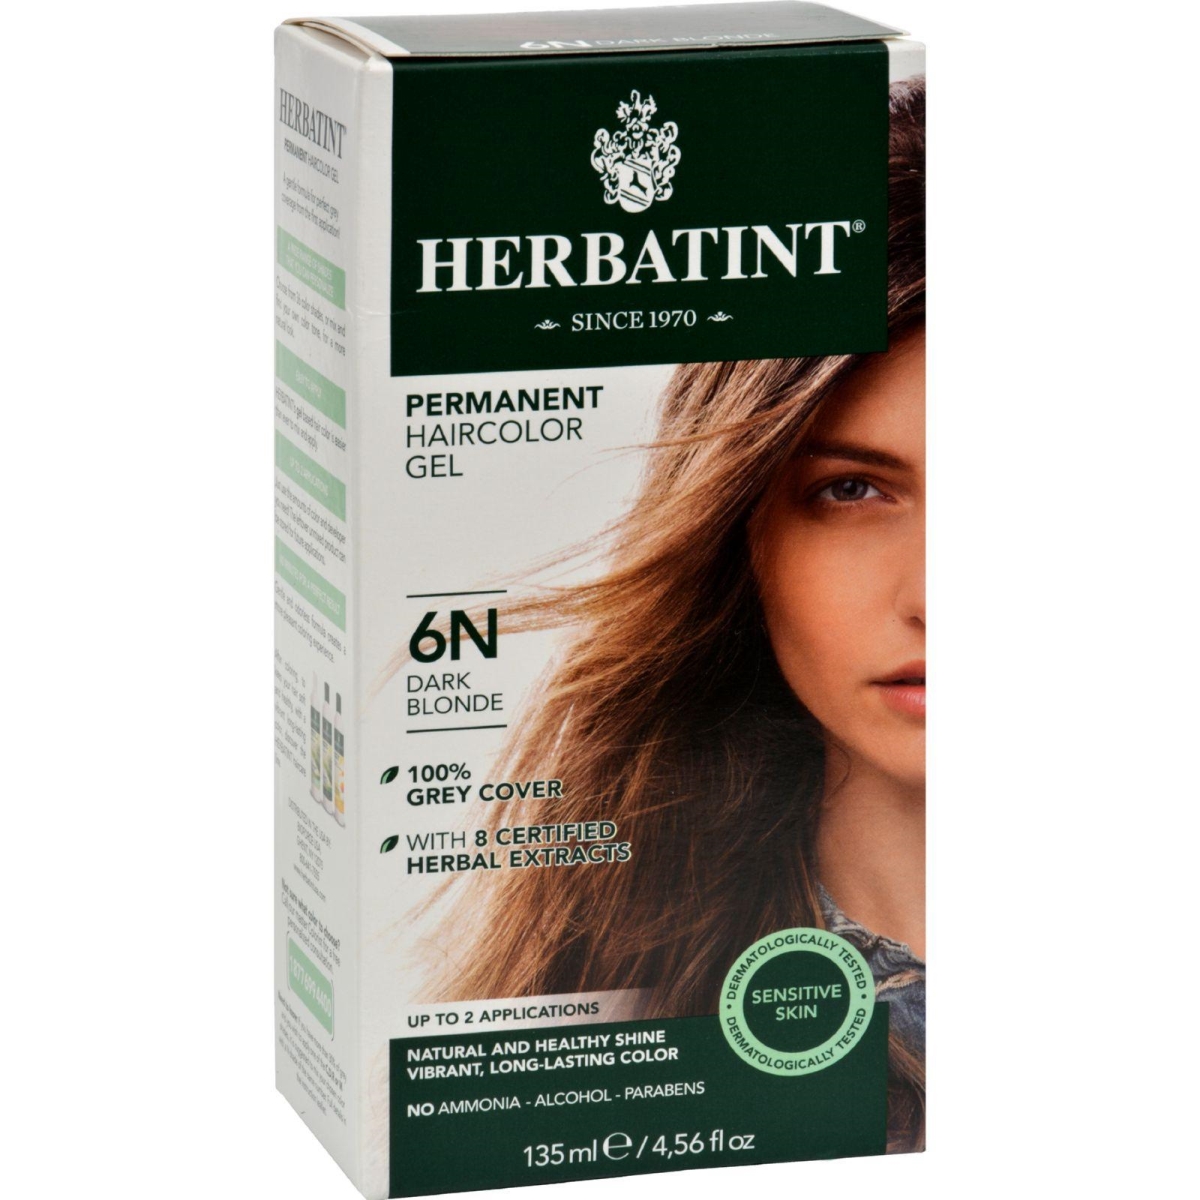 Hg0226670 135 Ml Permanent Herbal Haircolor Gel, 6n Dark Blonde